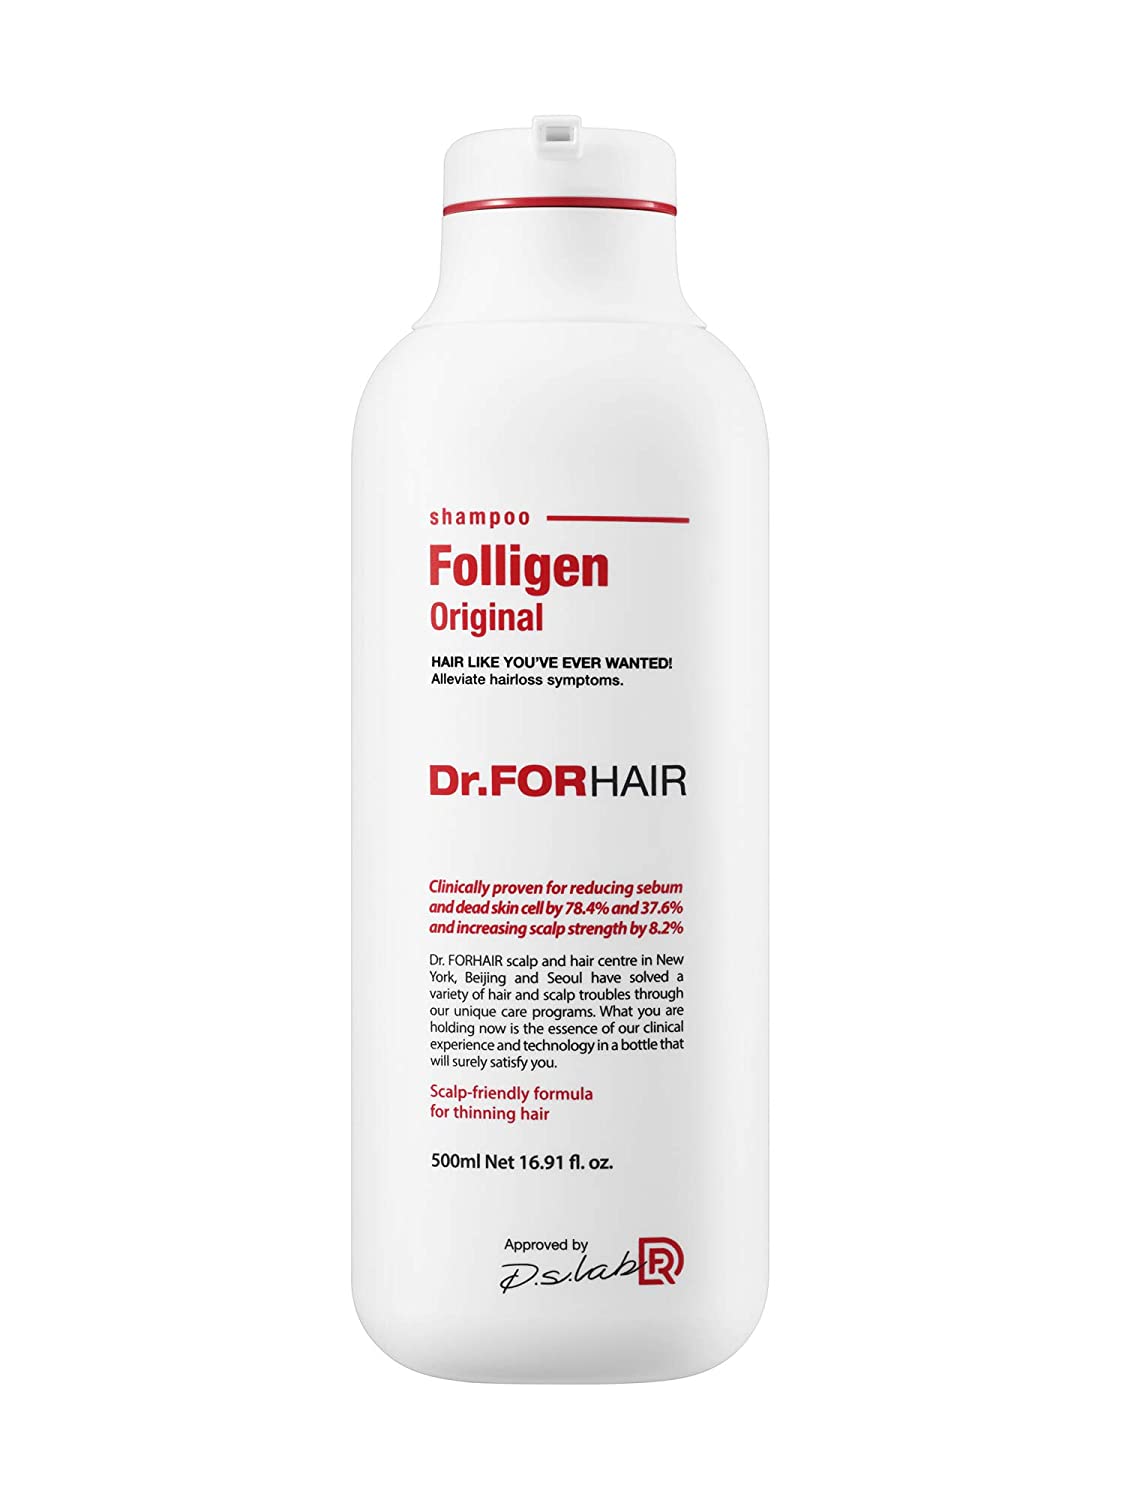 Dr.FORHAIR Folligen Shampoo Original 500ml / 16.91 fl. oz (New Version) - eCosmeticWorld